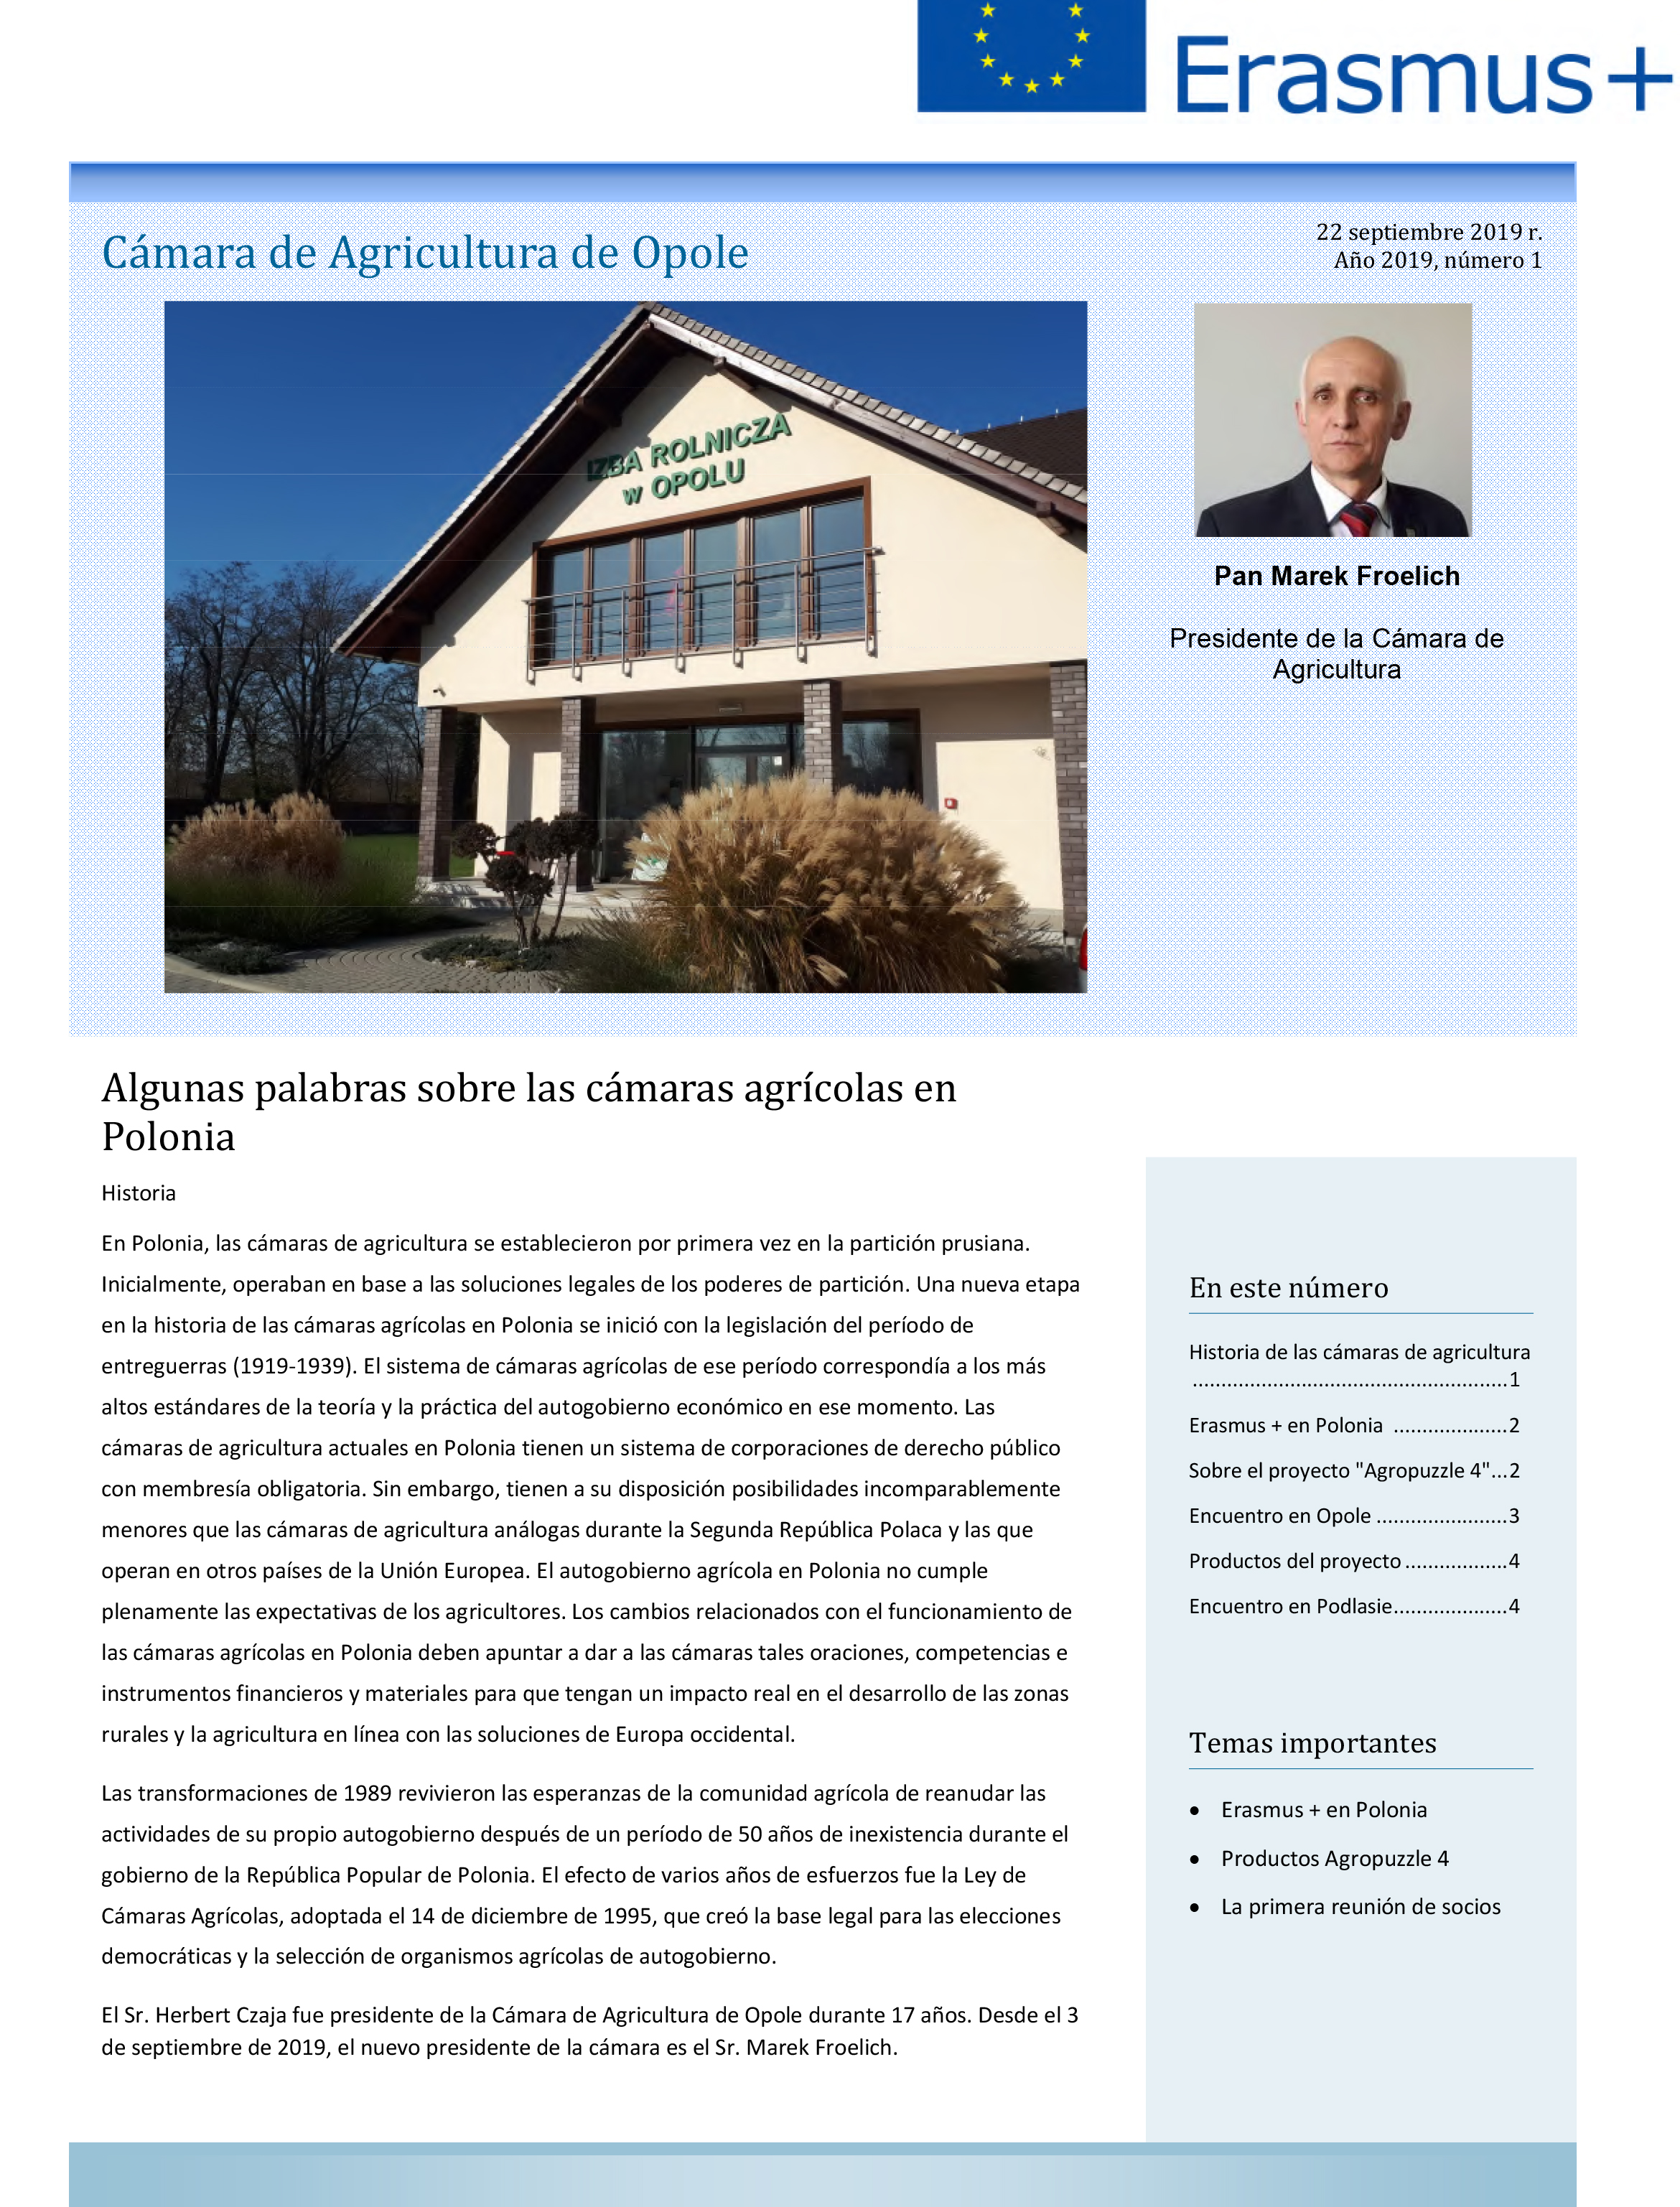 Página de la revista con artículo de la cámara agraria Opole